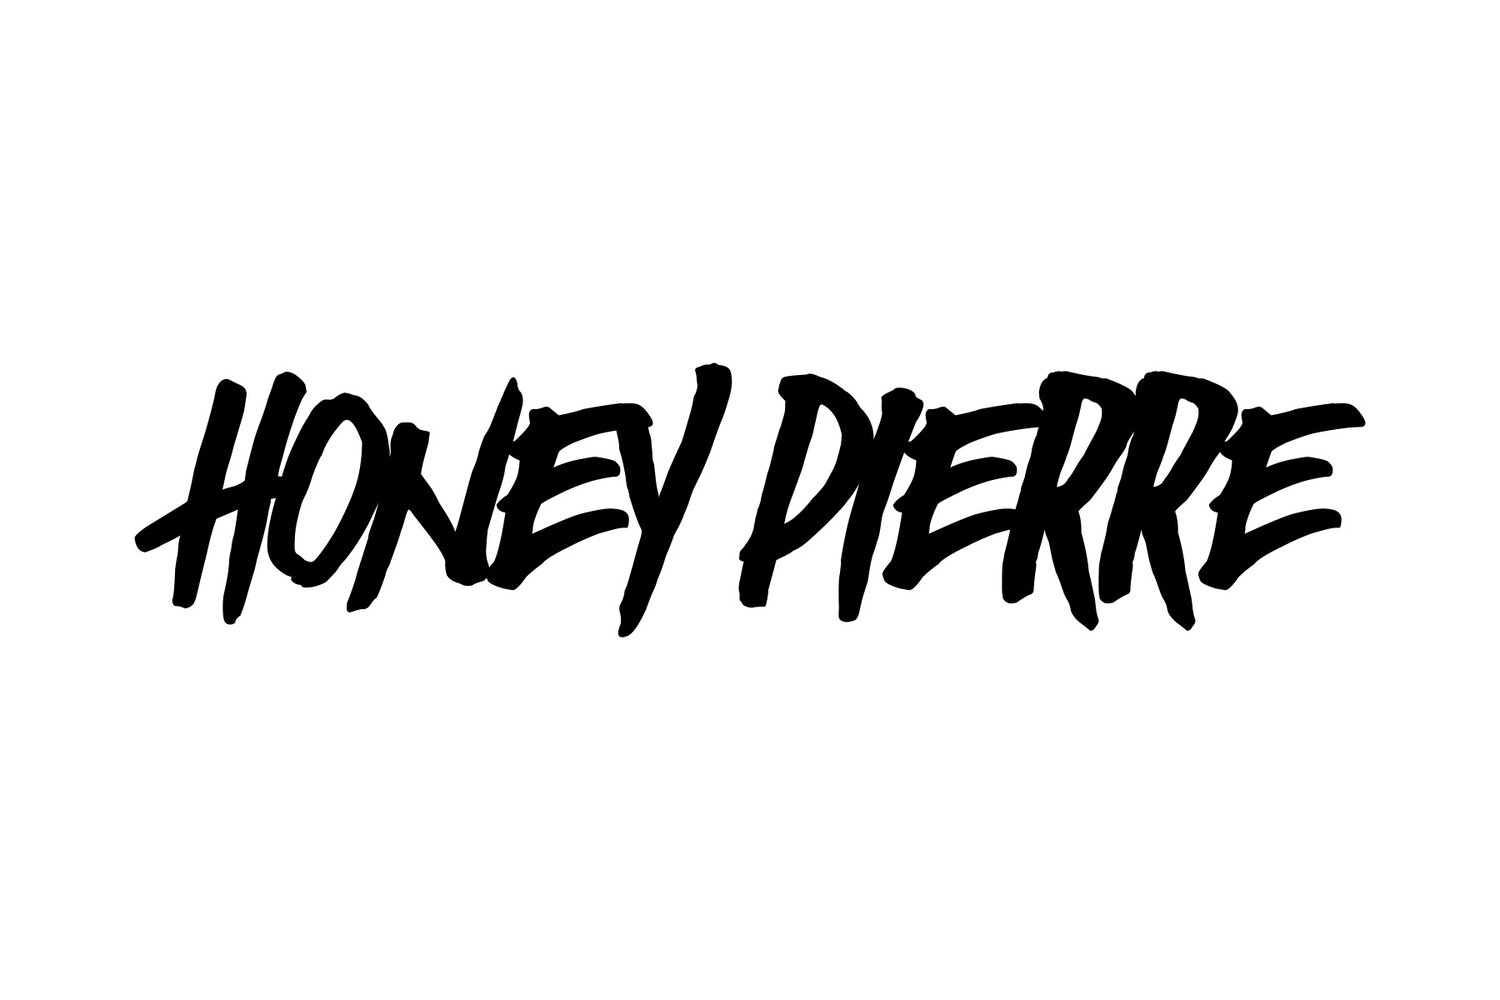 Honeypierre.com